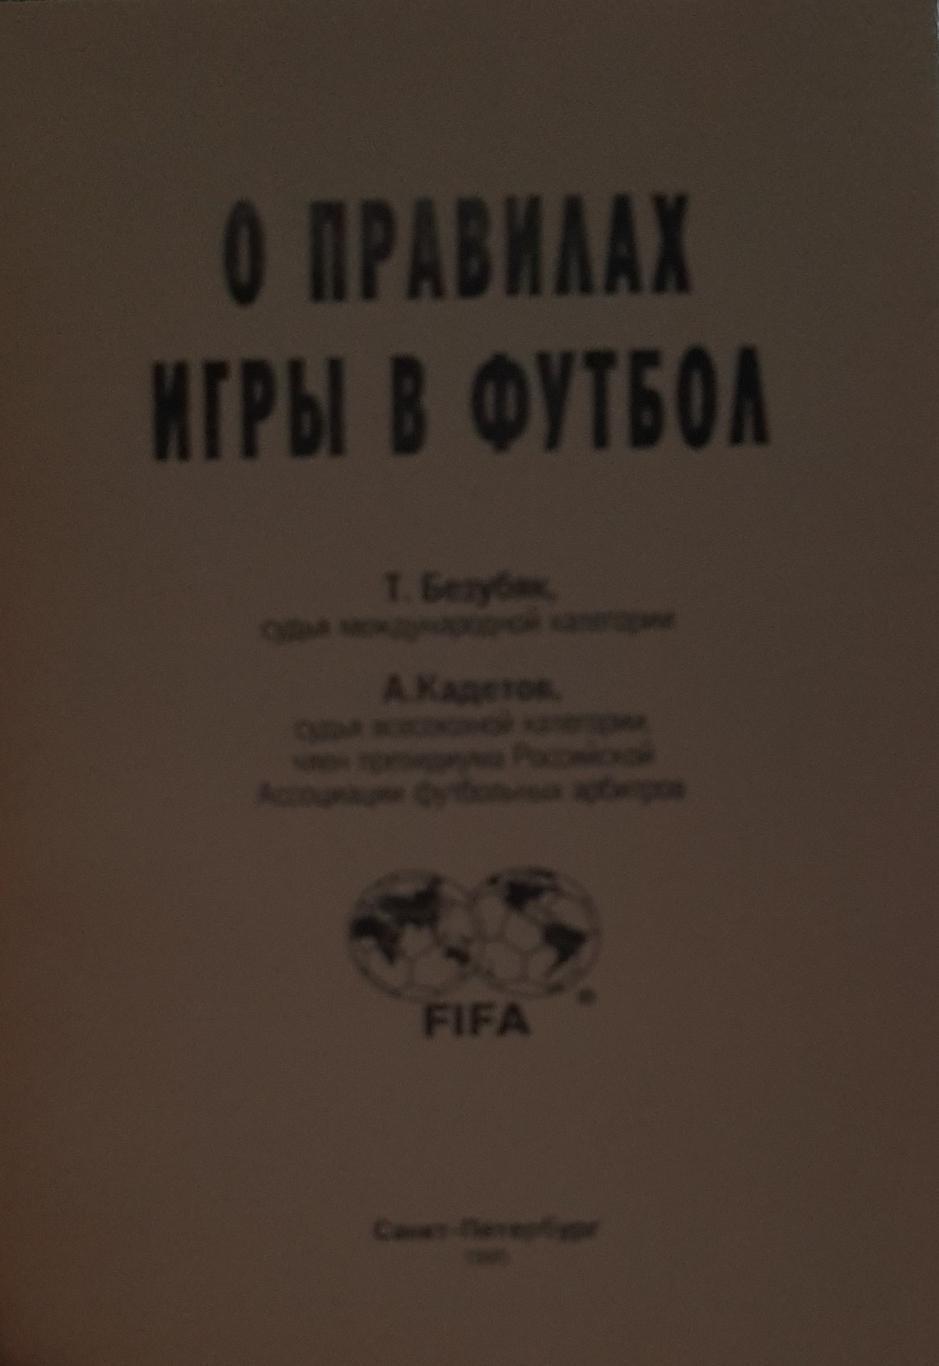 Т. Безубяк О правила игры в футбол. СПб, 1995 1